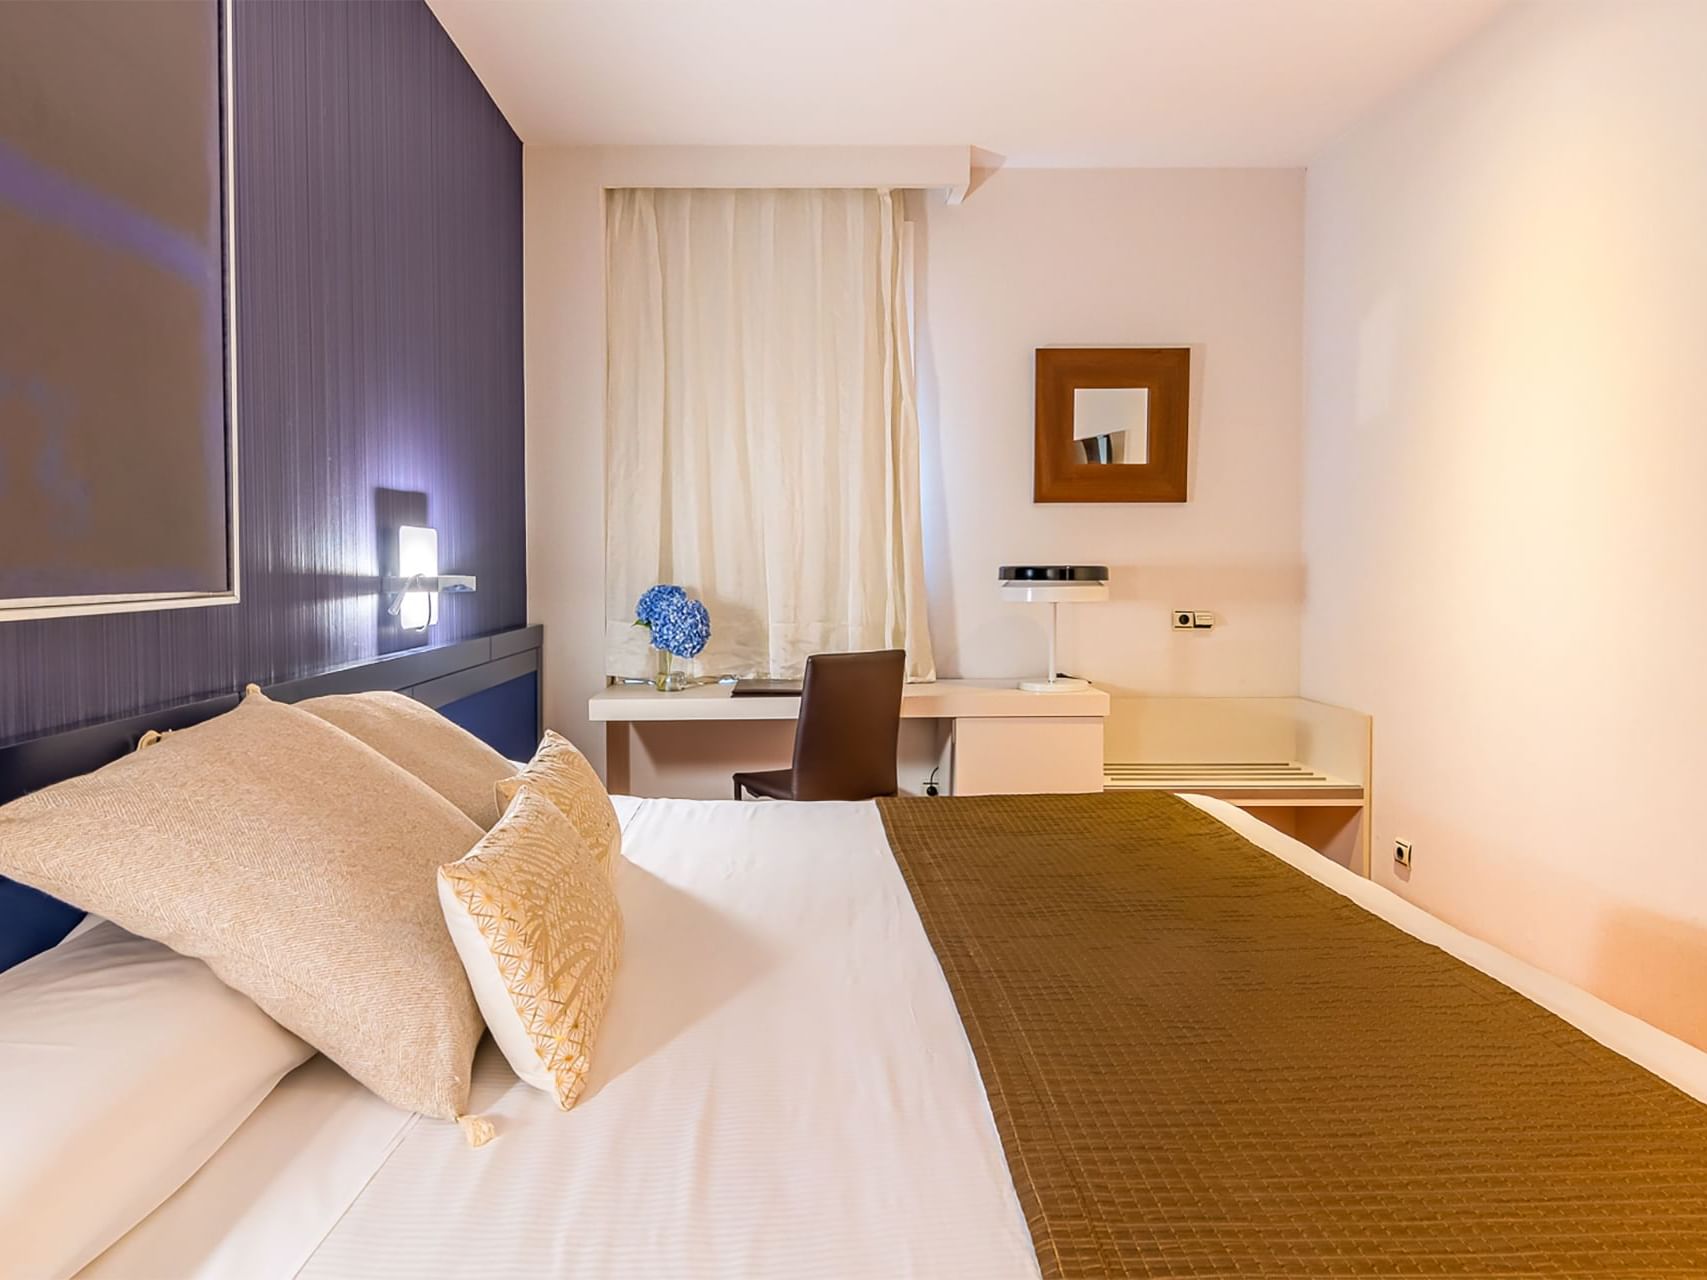 Habitación Doble Estándar del Hotel Amura Alcobendas cerca de Madrid